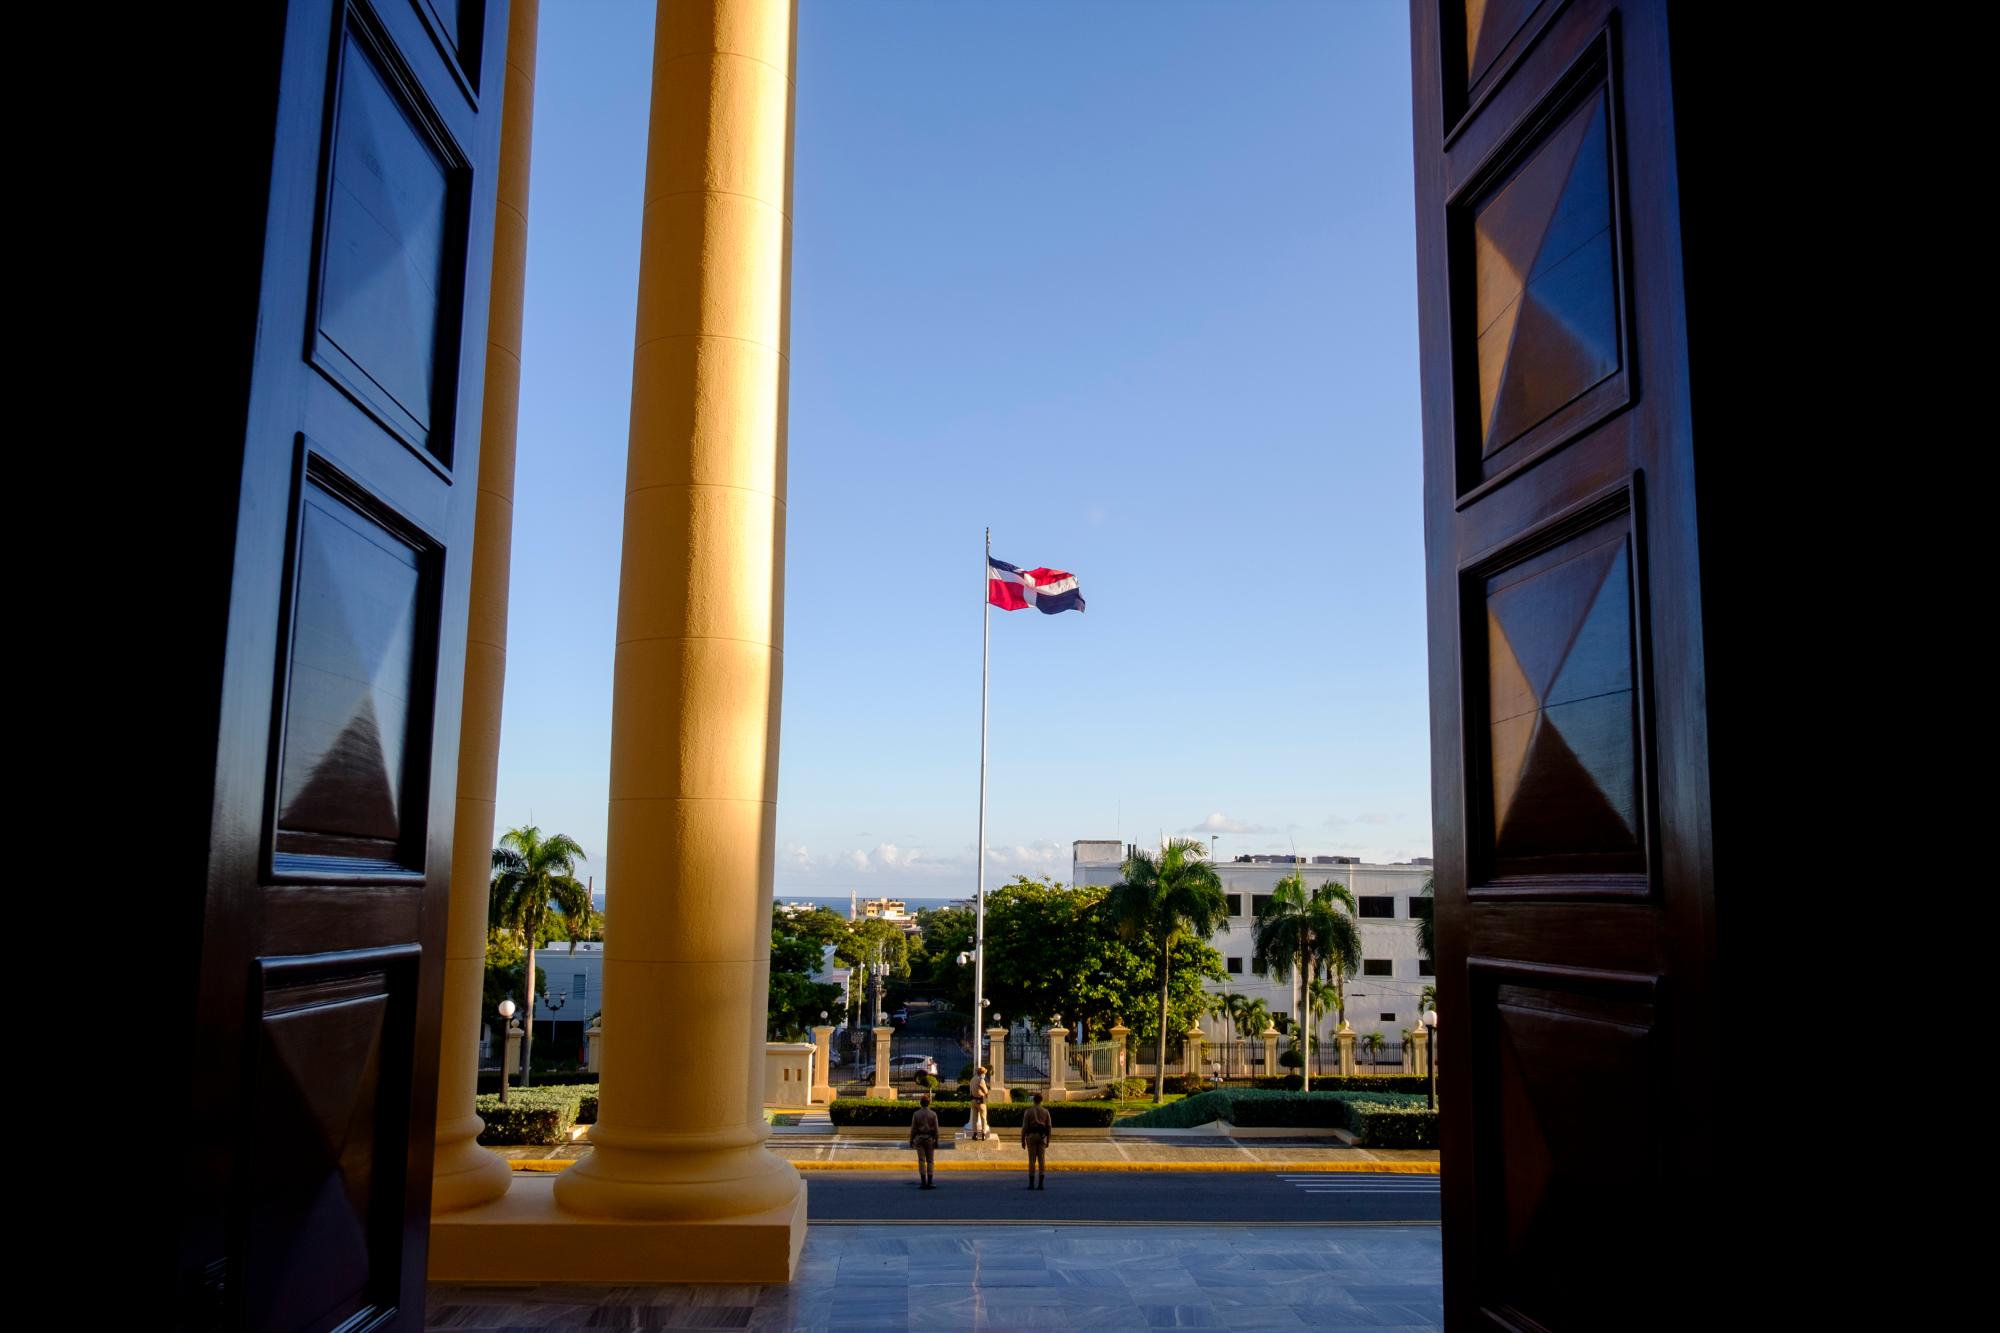 Arriado de la bandera tricolor en el Palacio Nacional